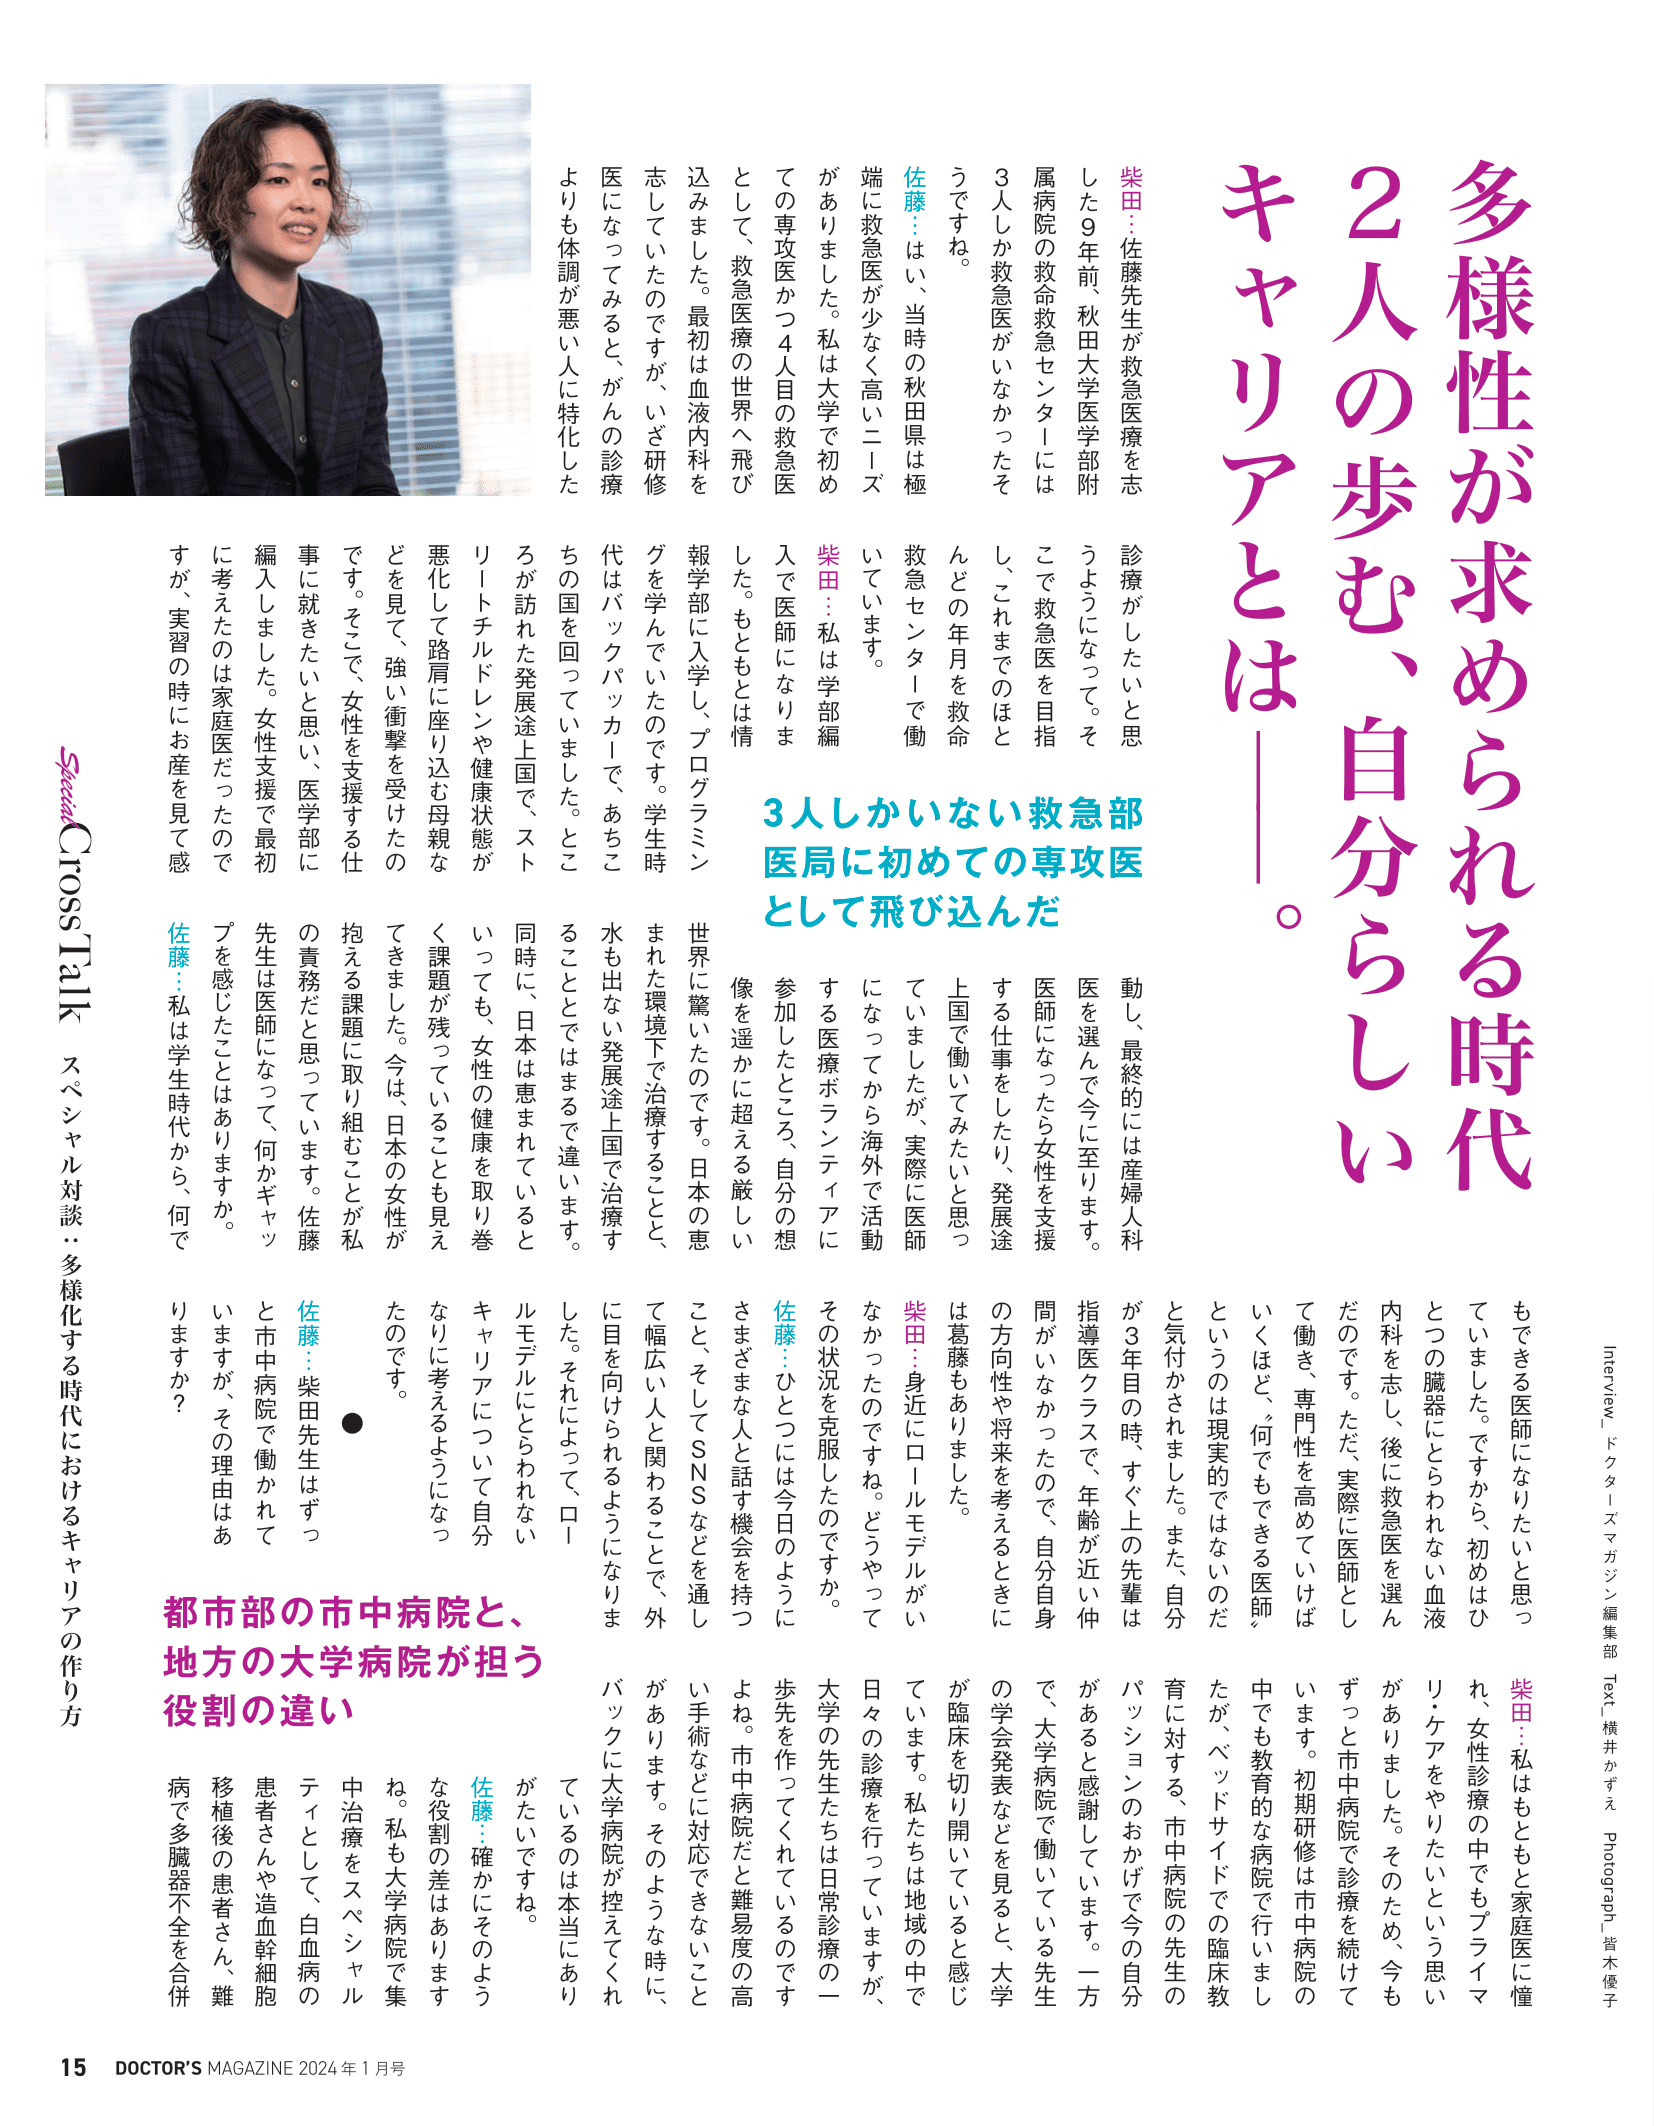 救急・集中治療医学講座の佐藤佳澄助教の対談が「DOCTOR'S MAGAZINE1月号」に掲載されました。